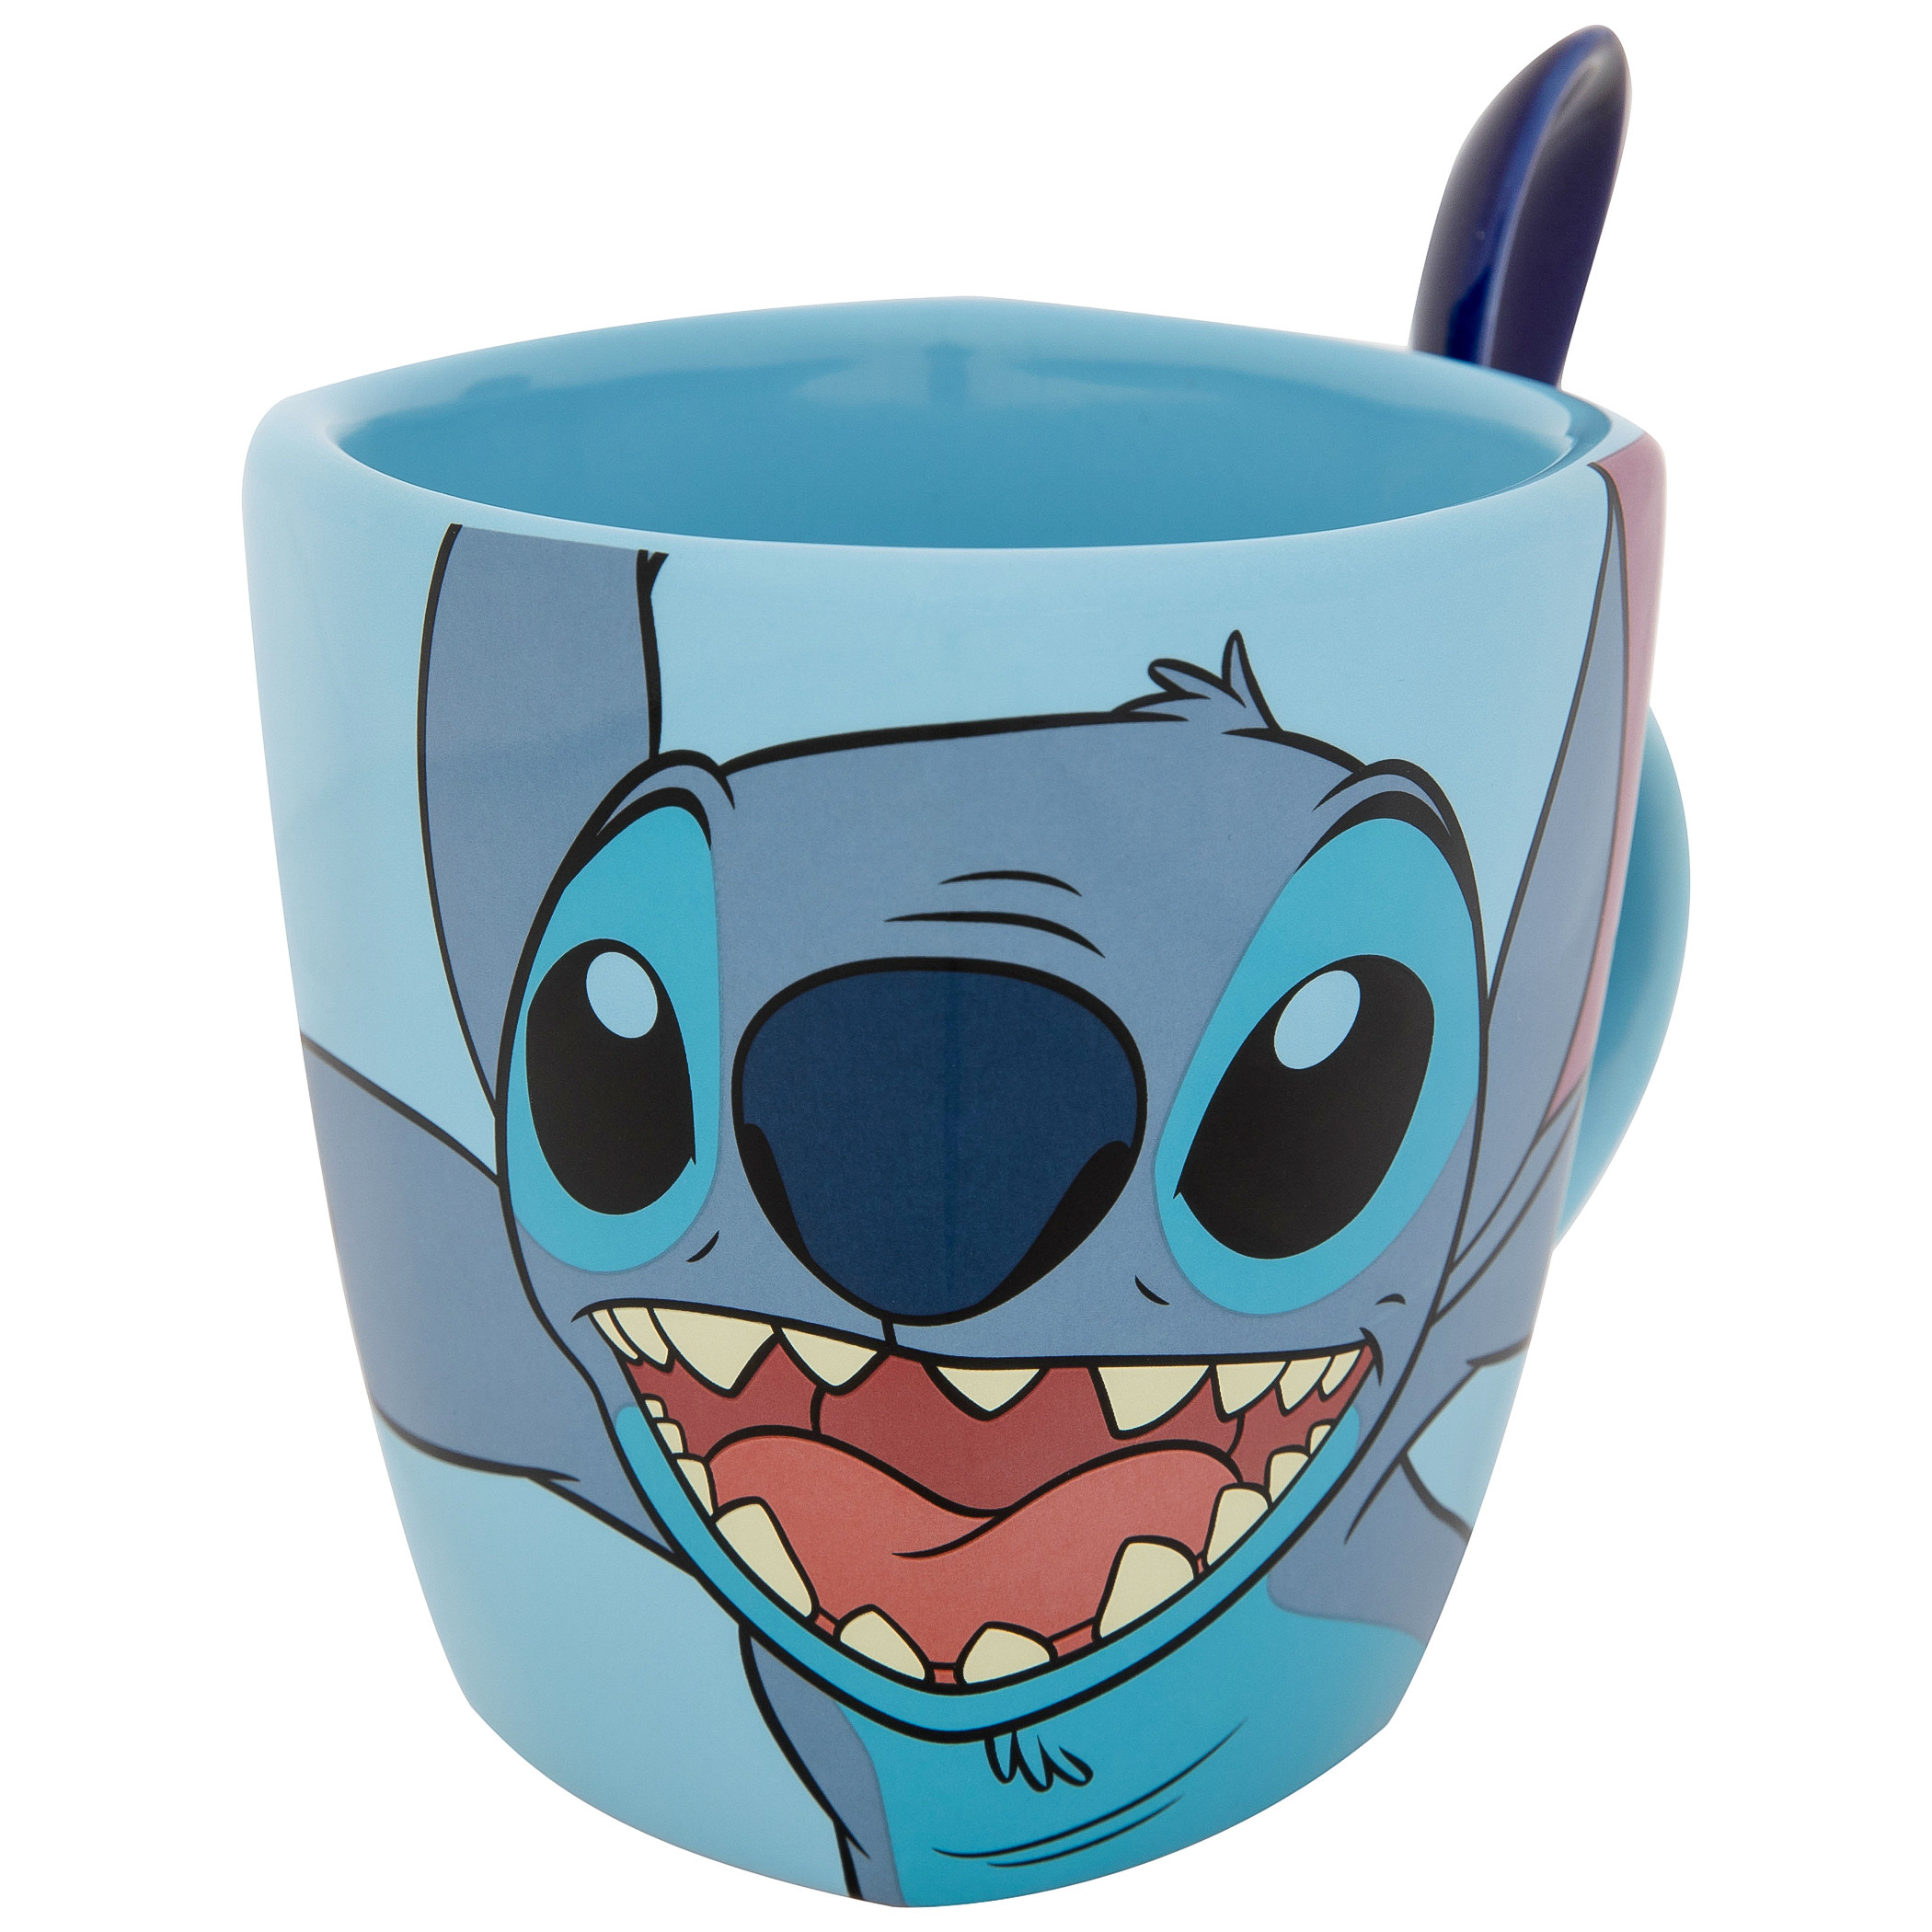 Lilo & Stitch 626 11oz Mug With Spoon